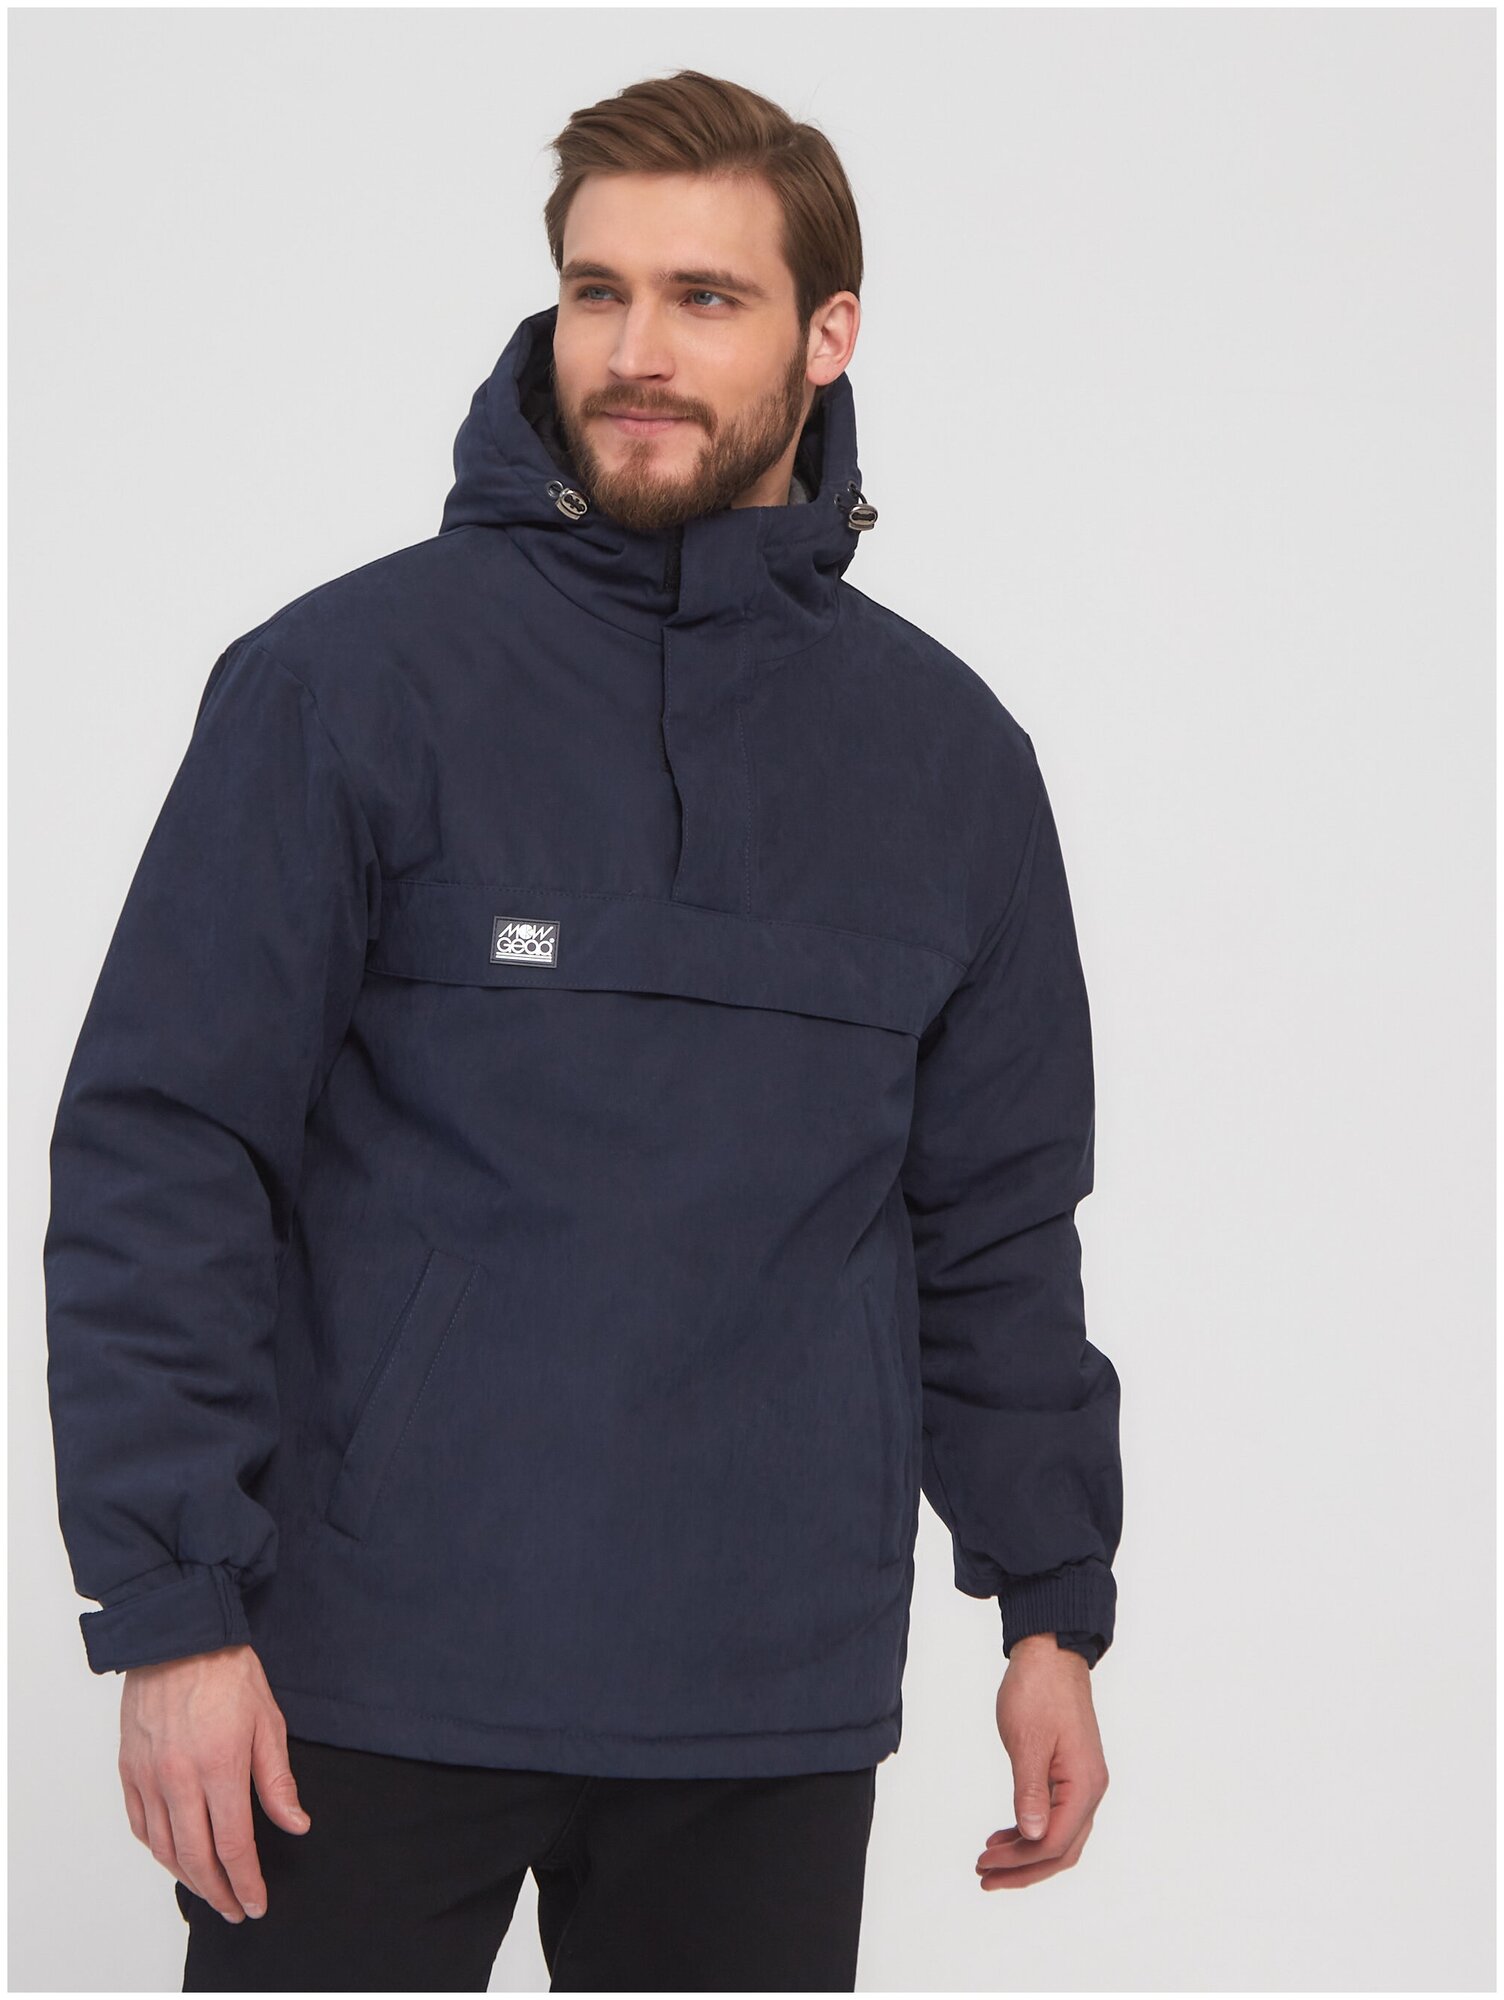 Анорак мужской демисезонный утепленный спортивный с капюшоном куртка без молнии для спорта футбола